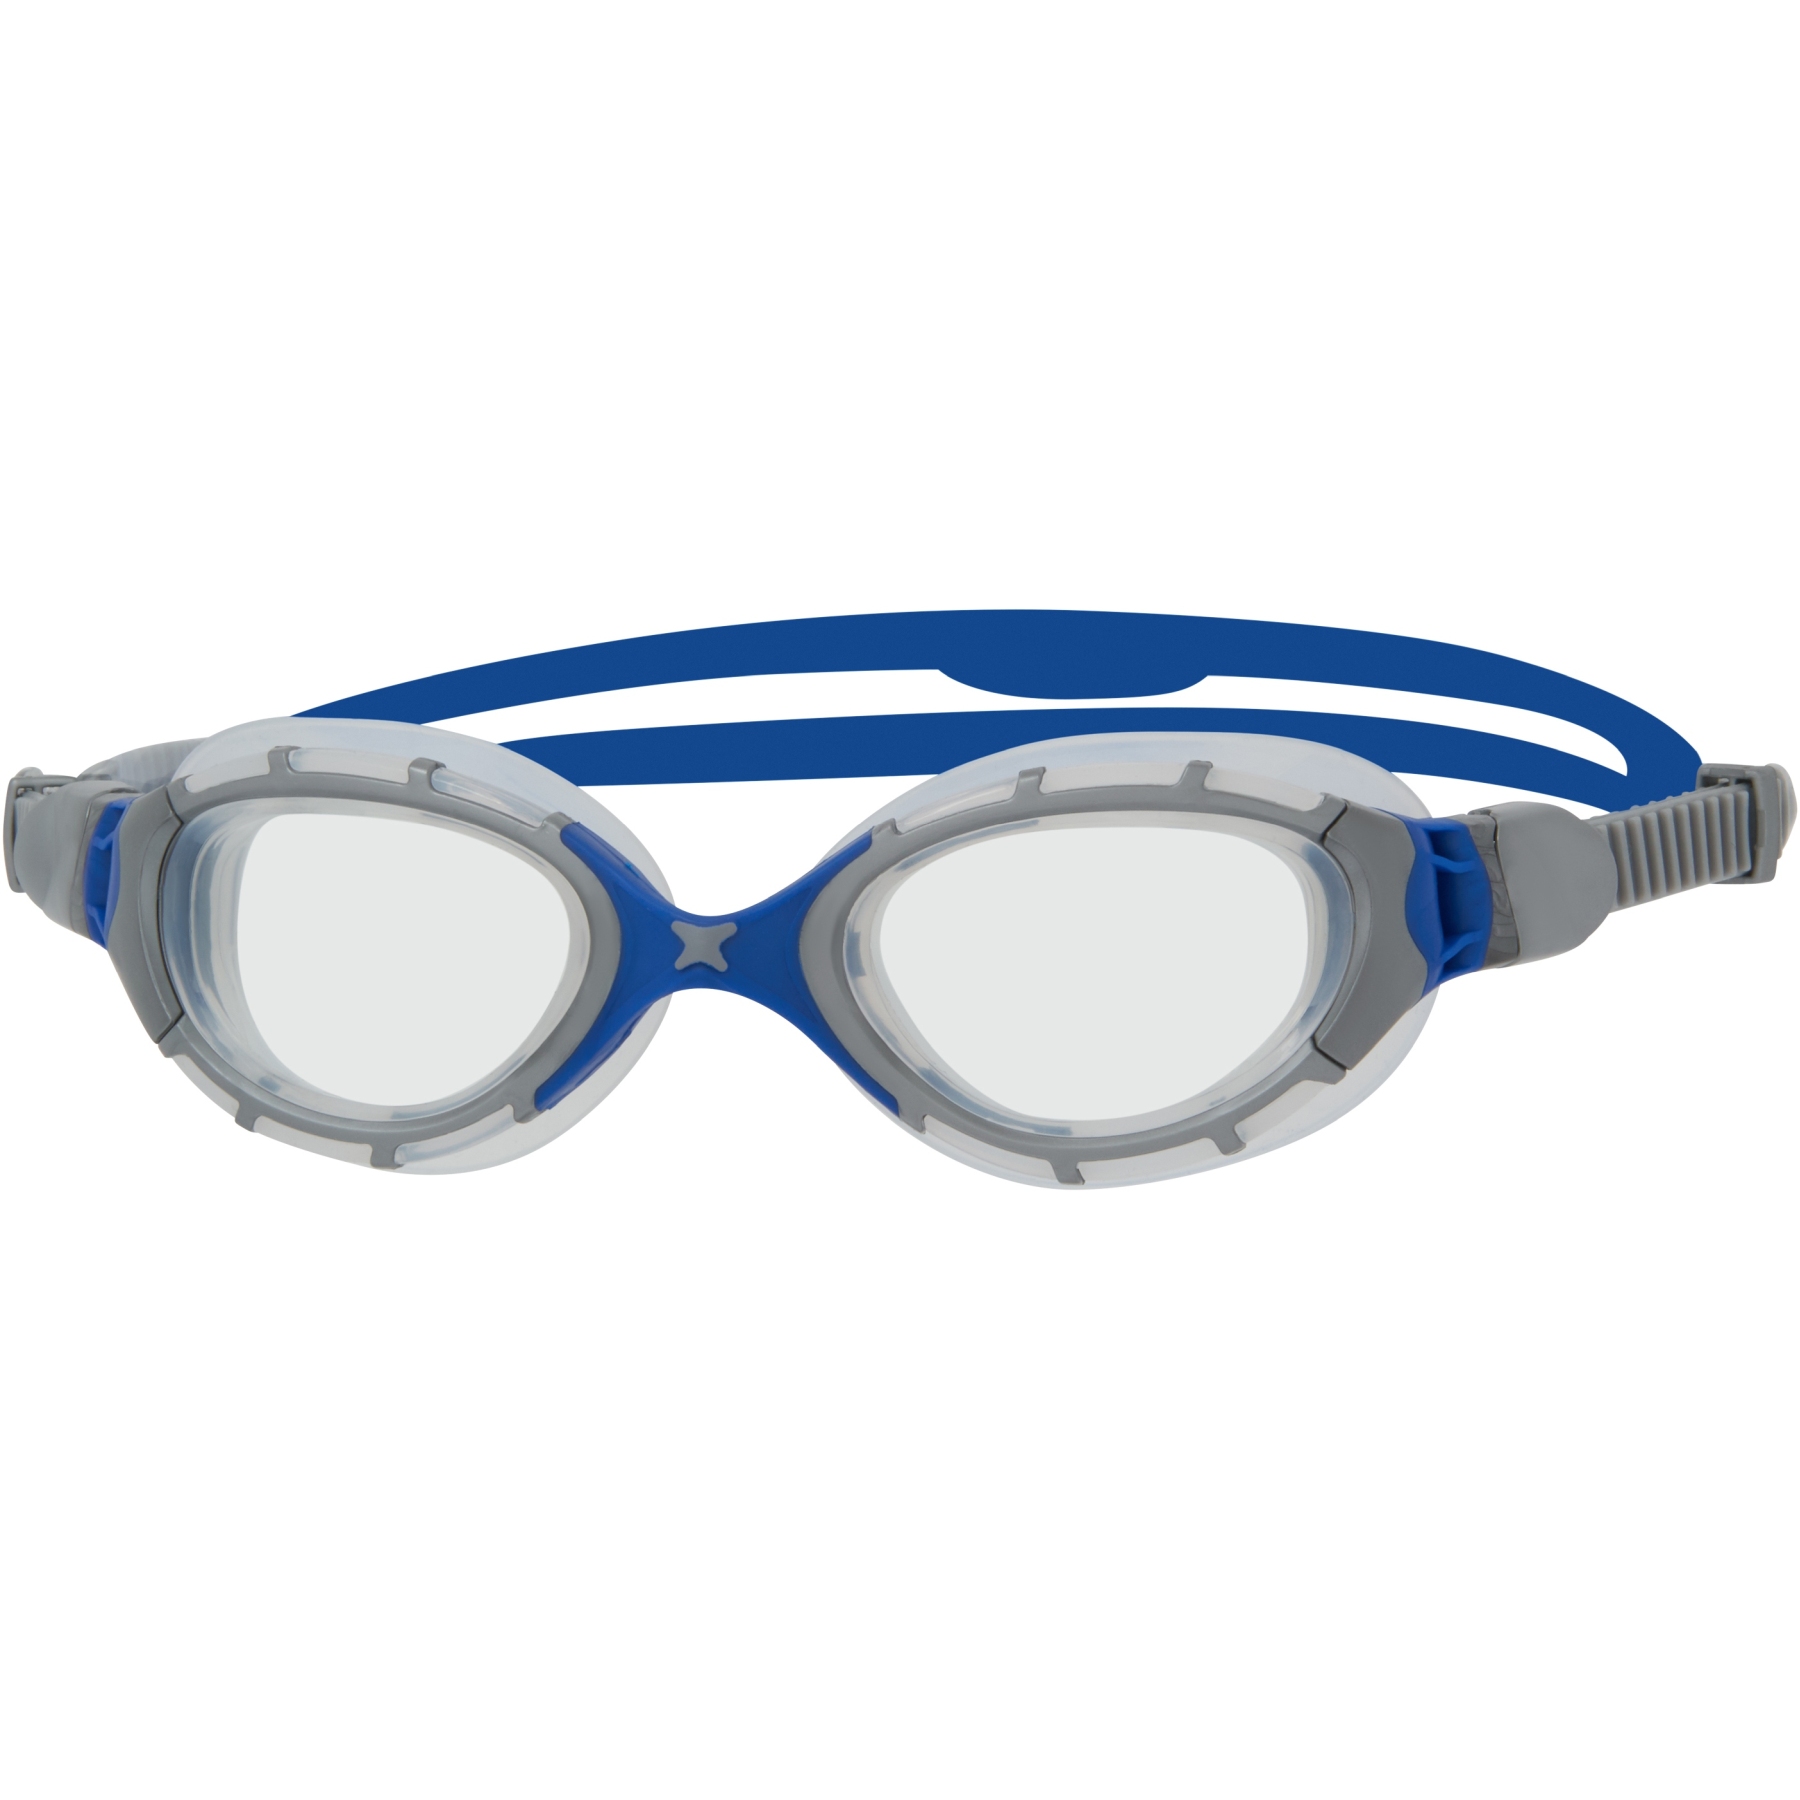 Produktbild von Zoggs Predator Flex Schwimmbrille - grau/blau/klar